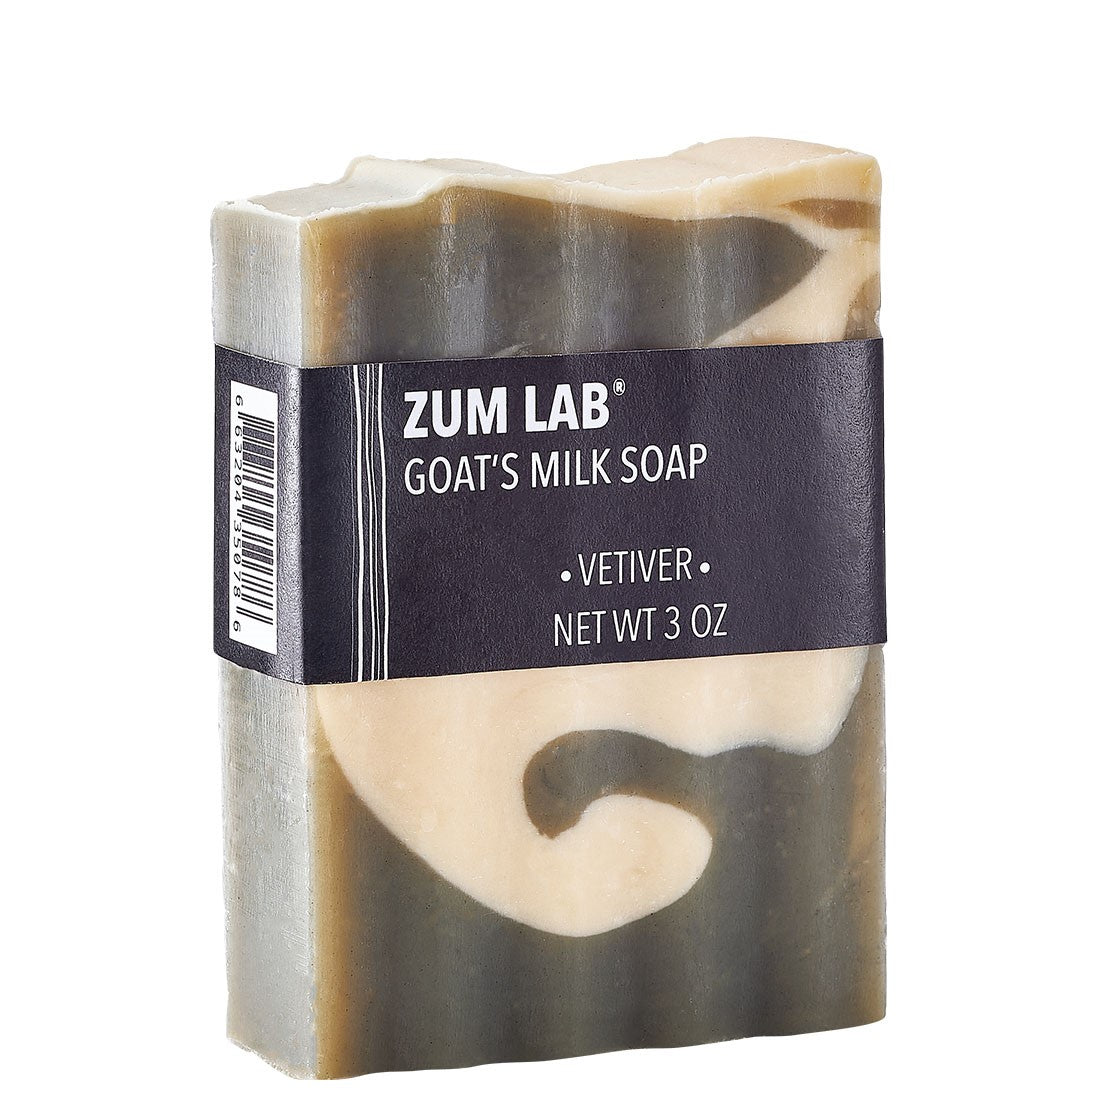 Zum Lab Vetiver Goat's Milk Soap Bar